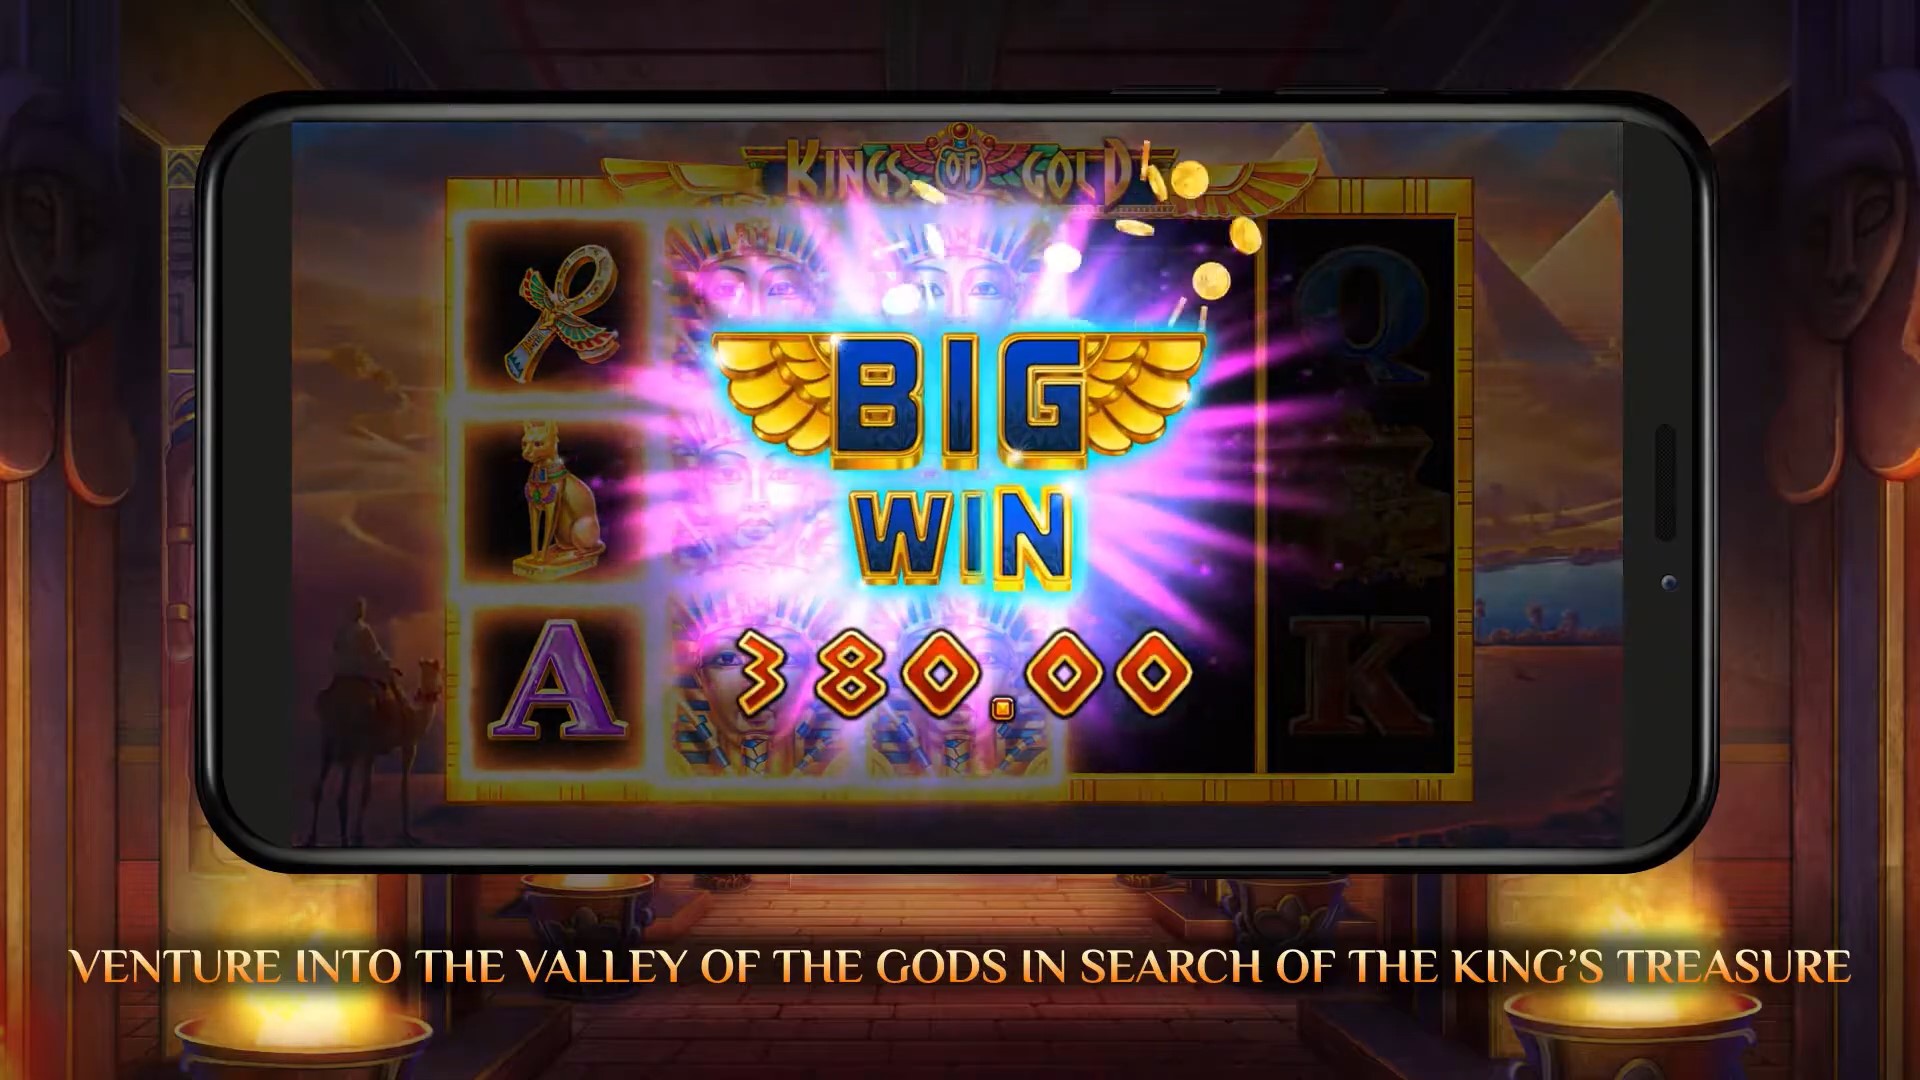 Kings of Gold big win iSoftBet